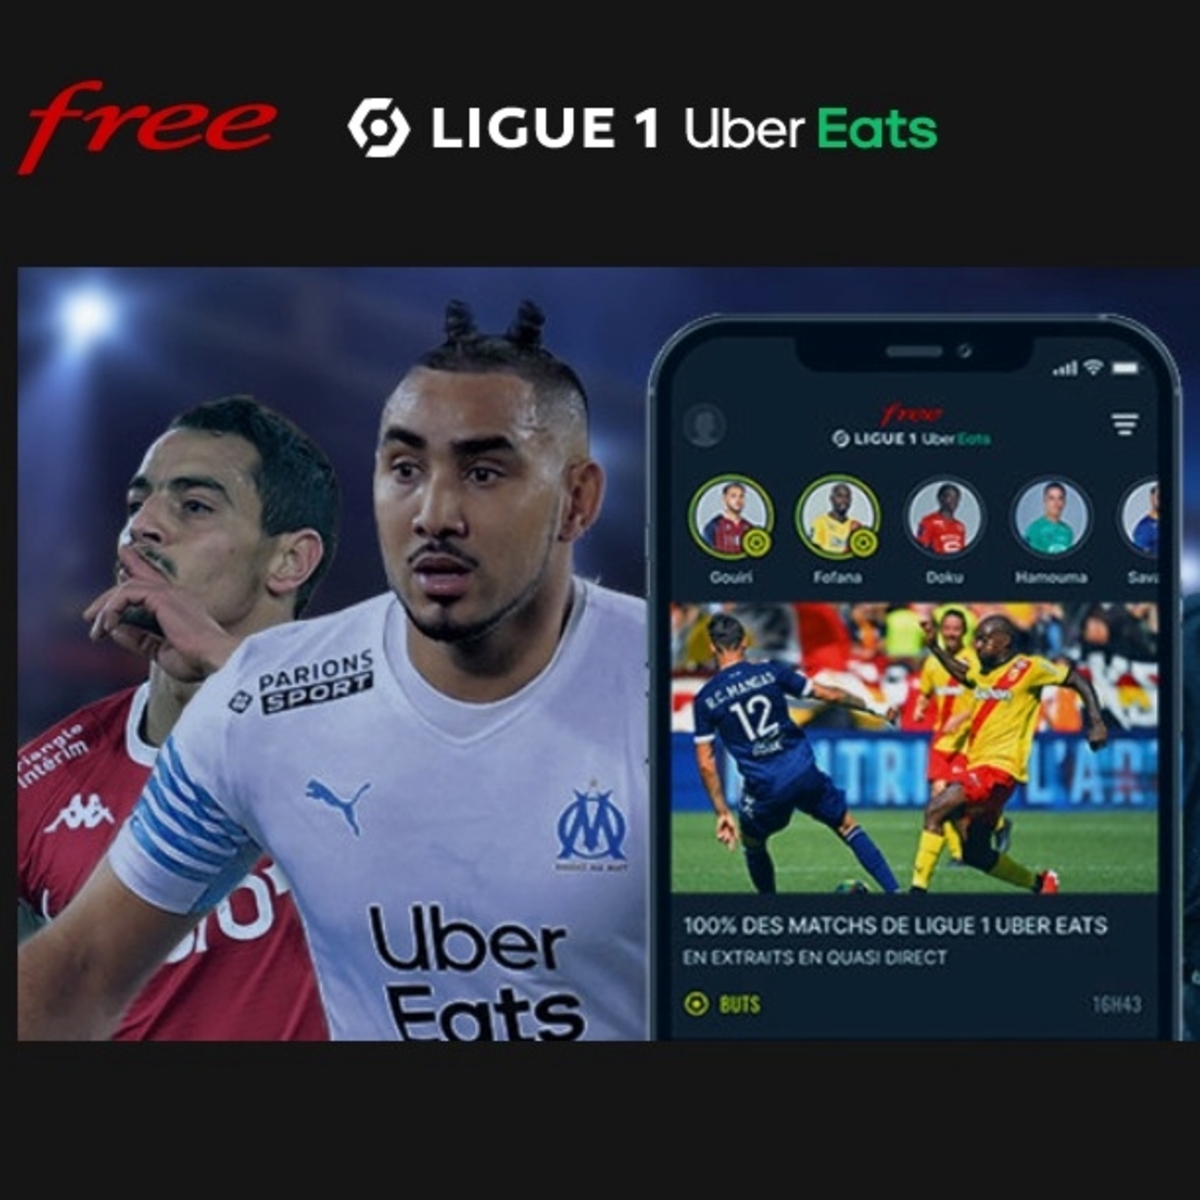 Free lance son site internet dédié à la Ligue 1